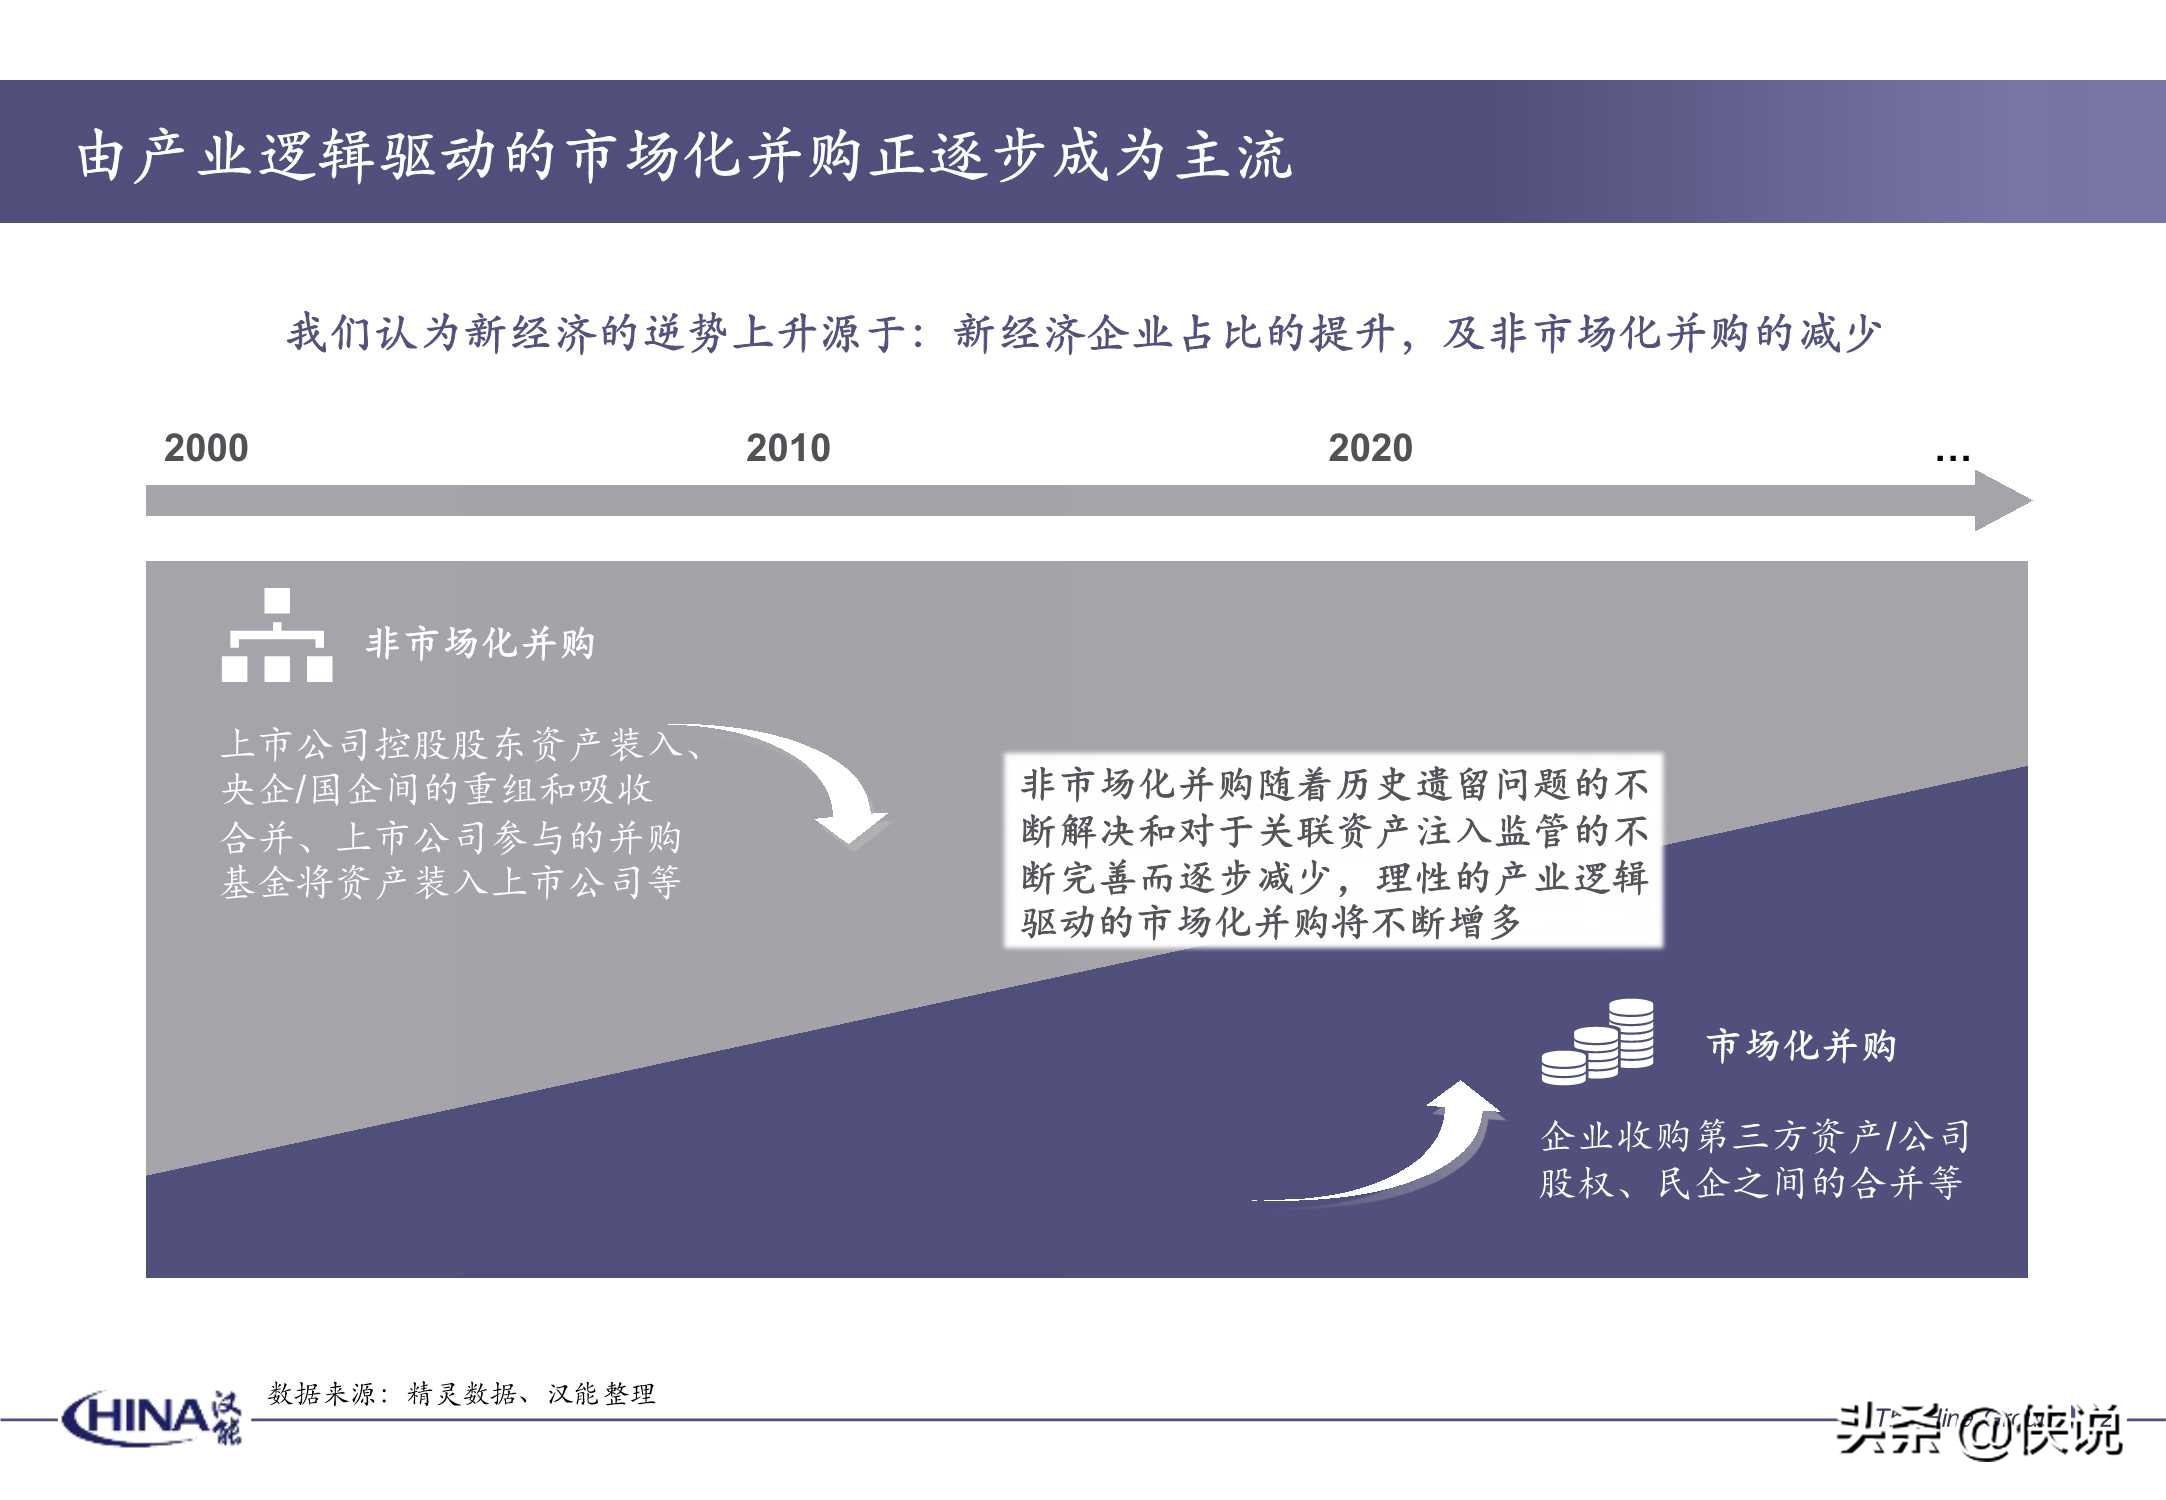 2020年度并购报告-汉能投资